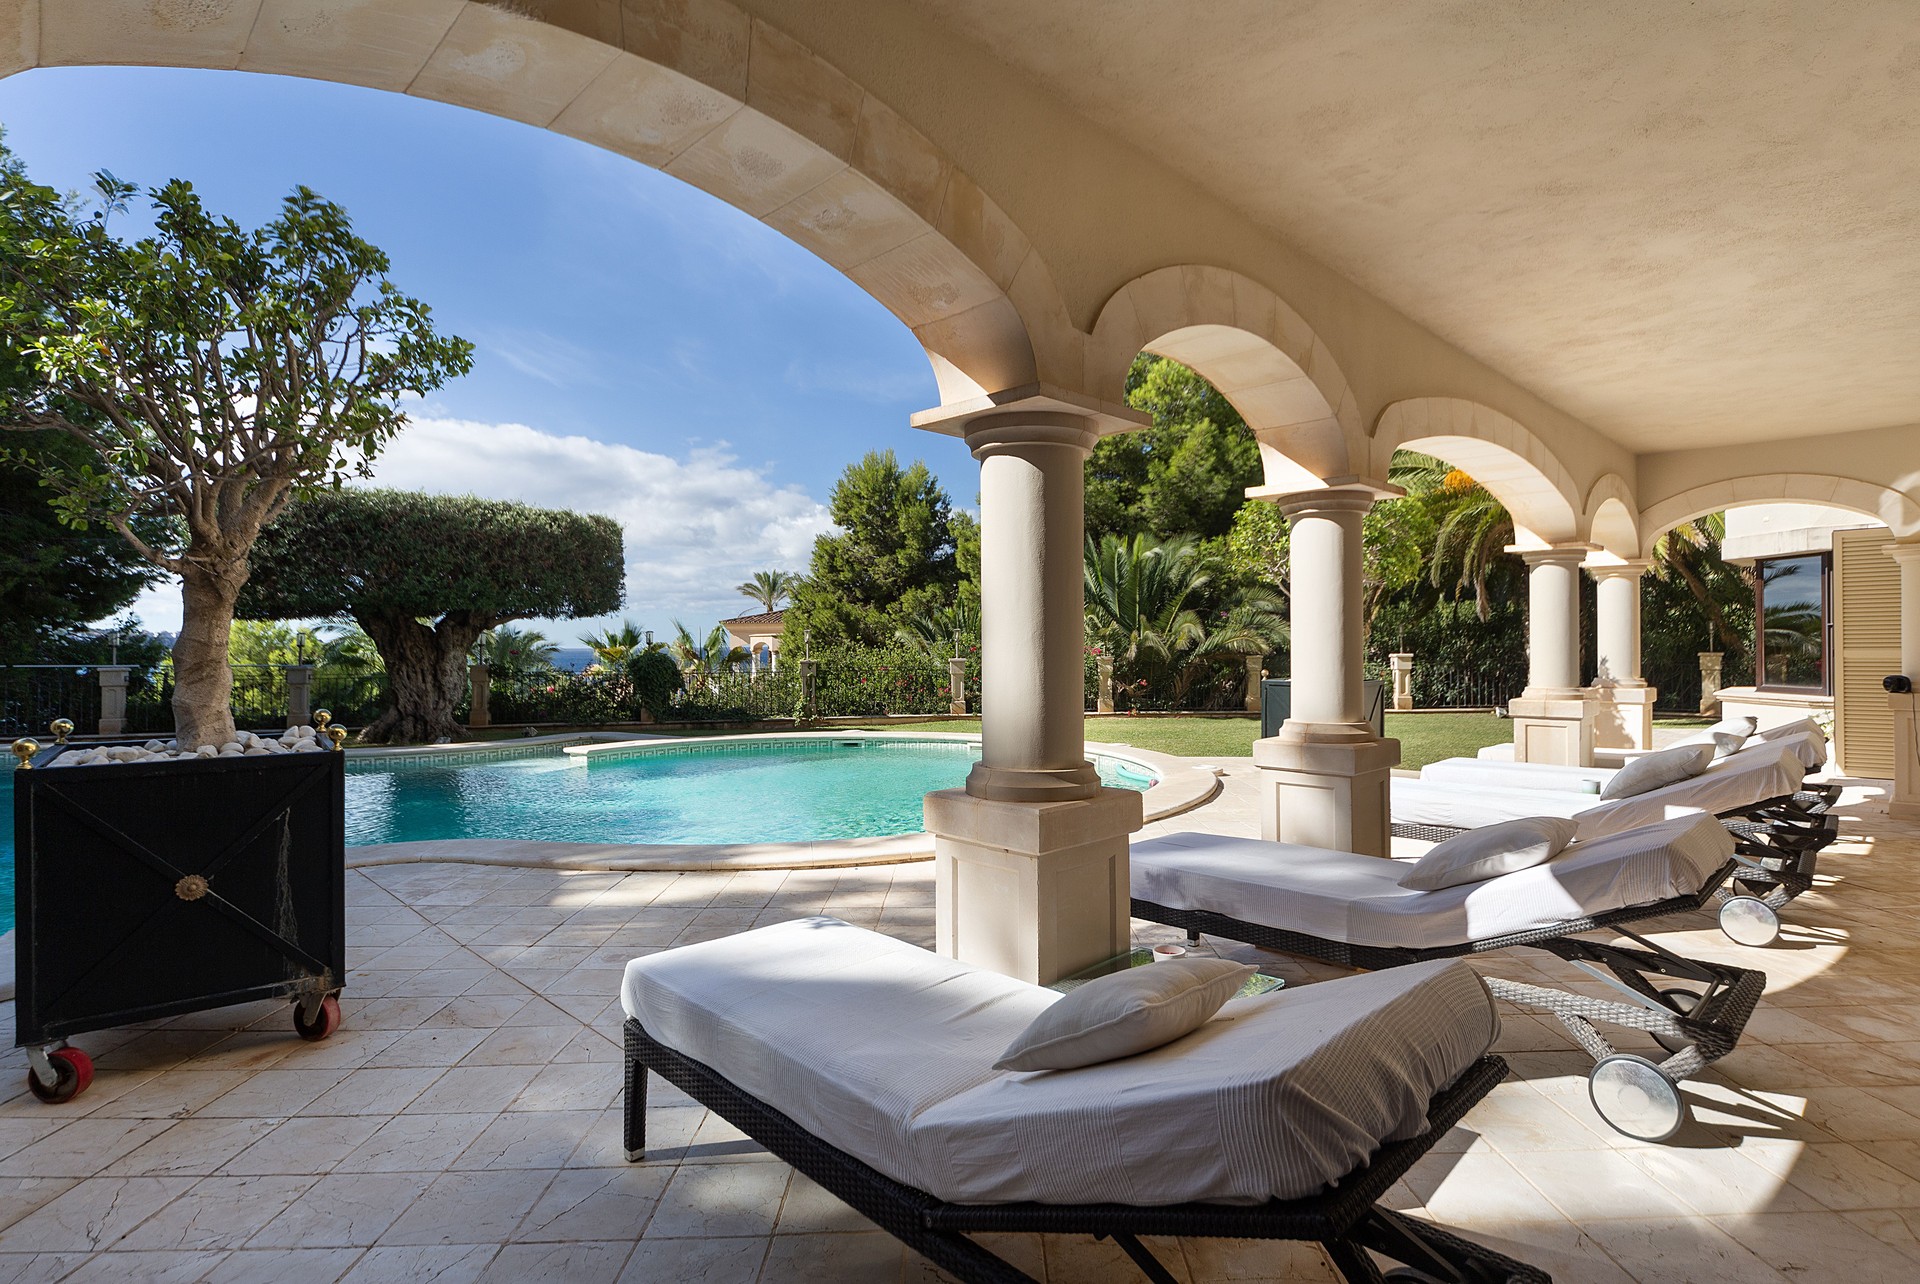 Elegant Villa with Sea Views in Costa de la Calma: Image 1